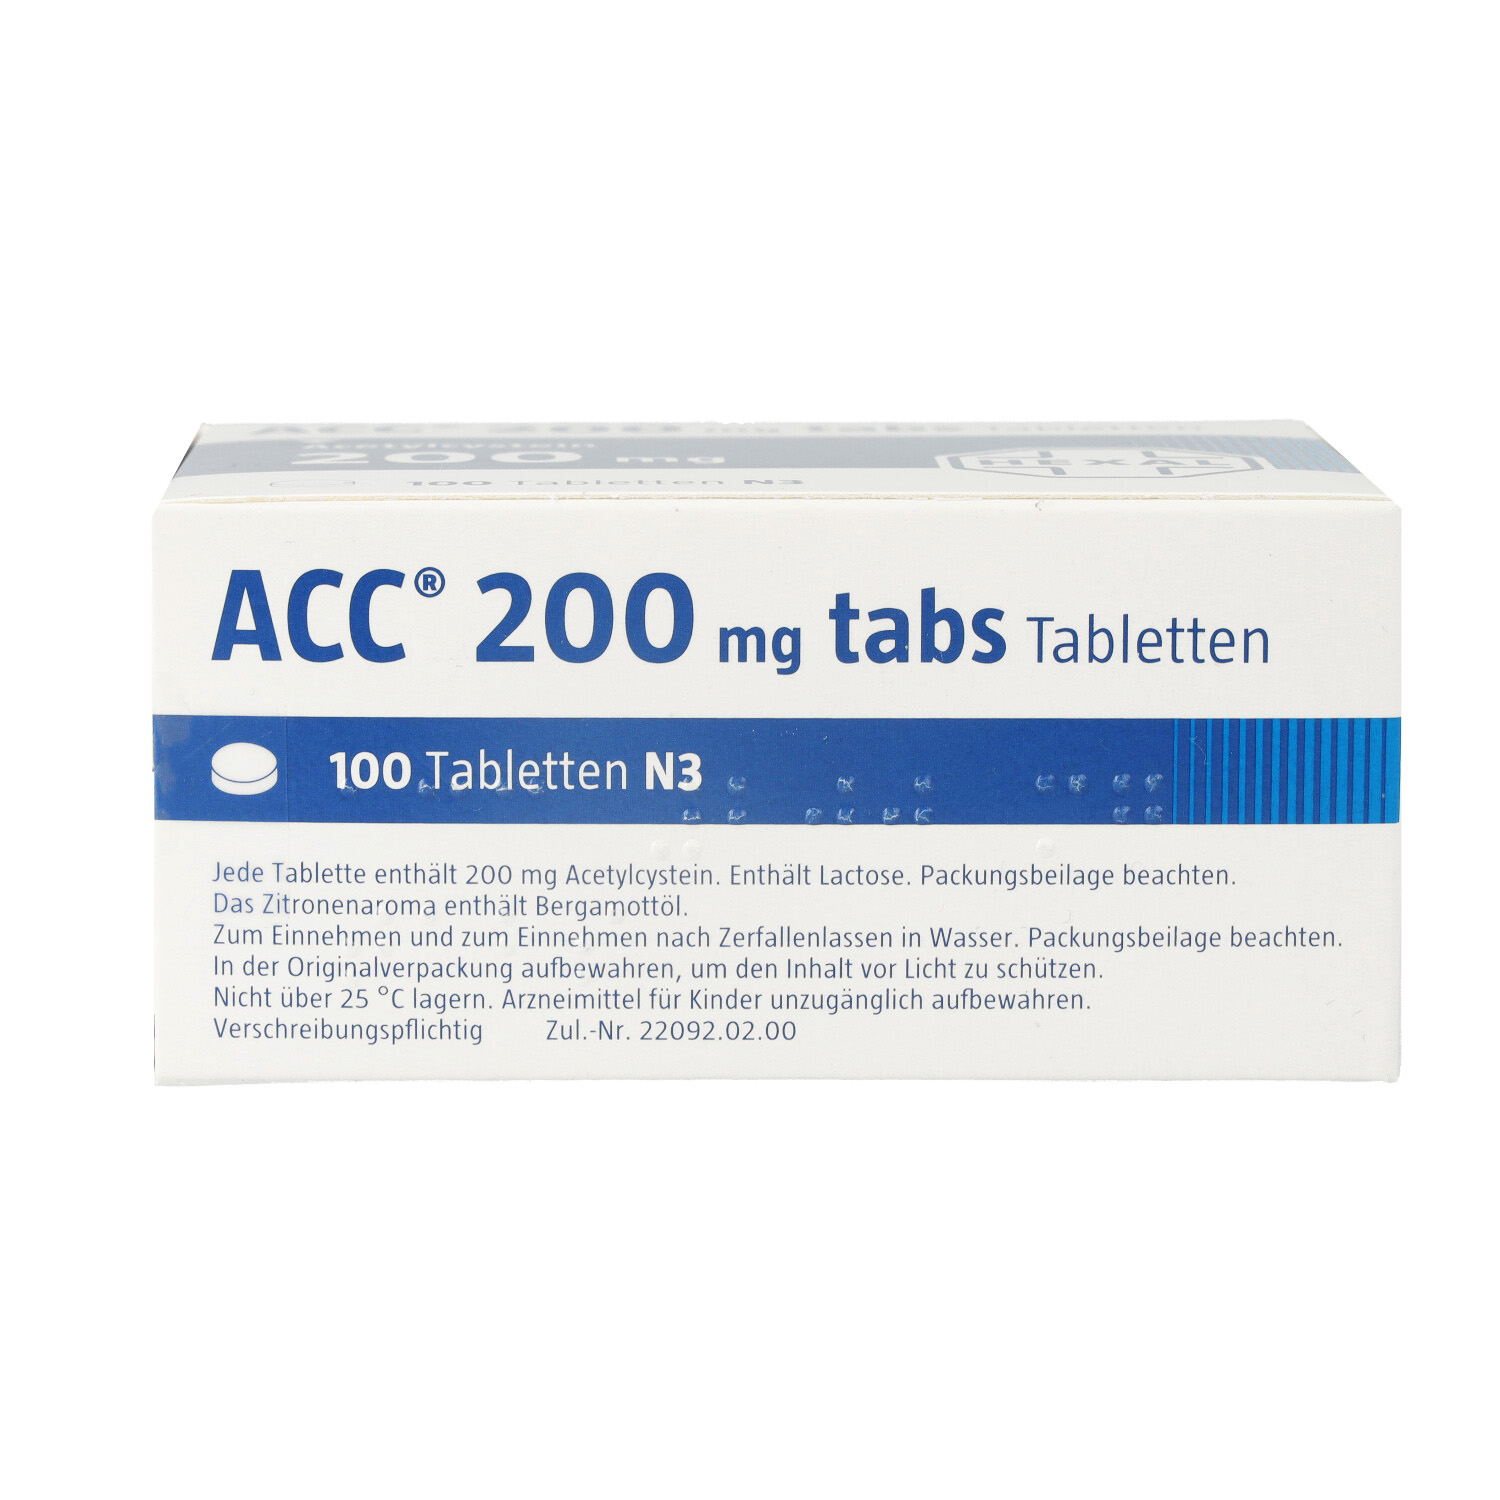 ACC 200 tabs Tabletten